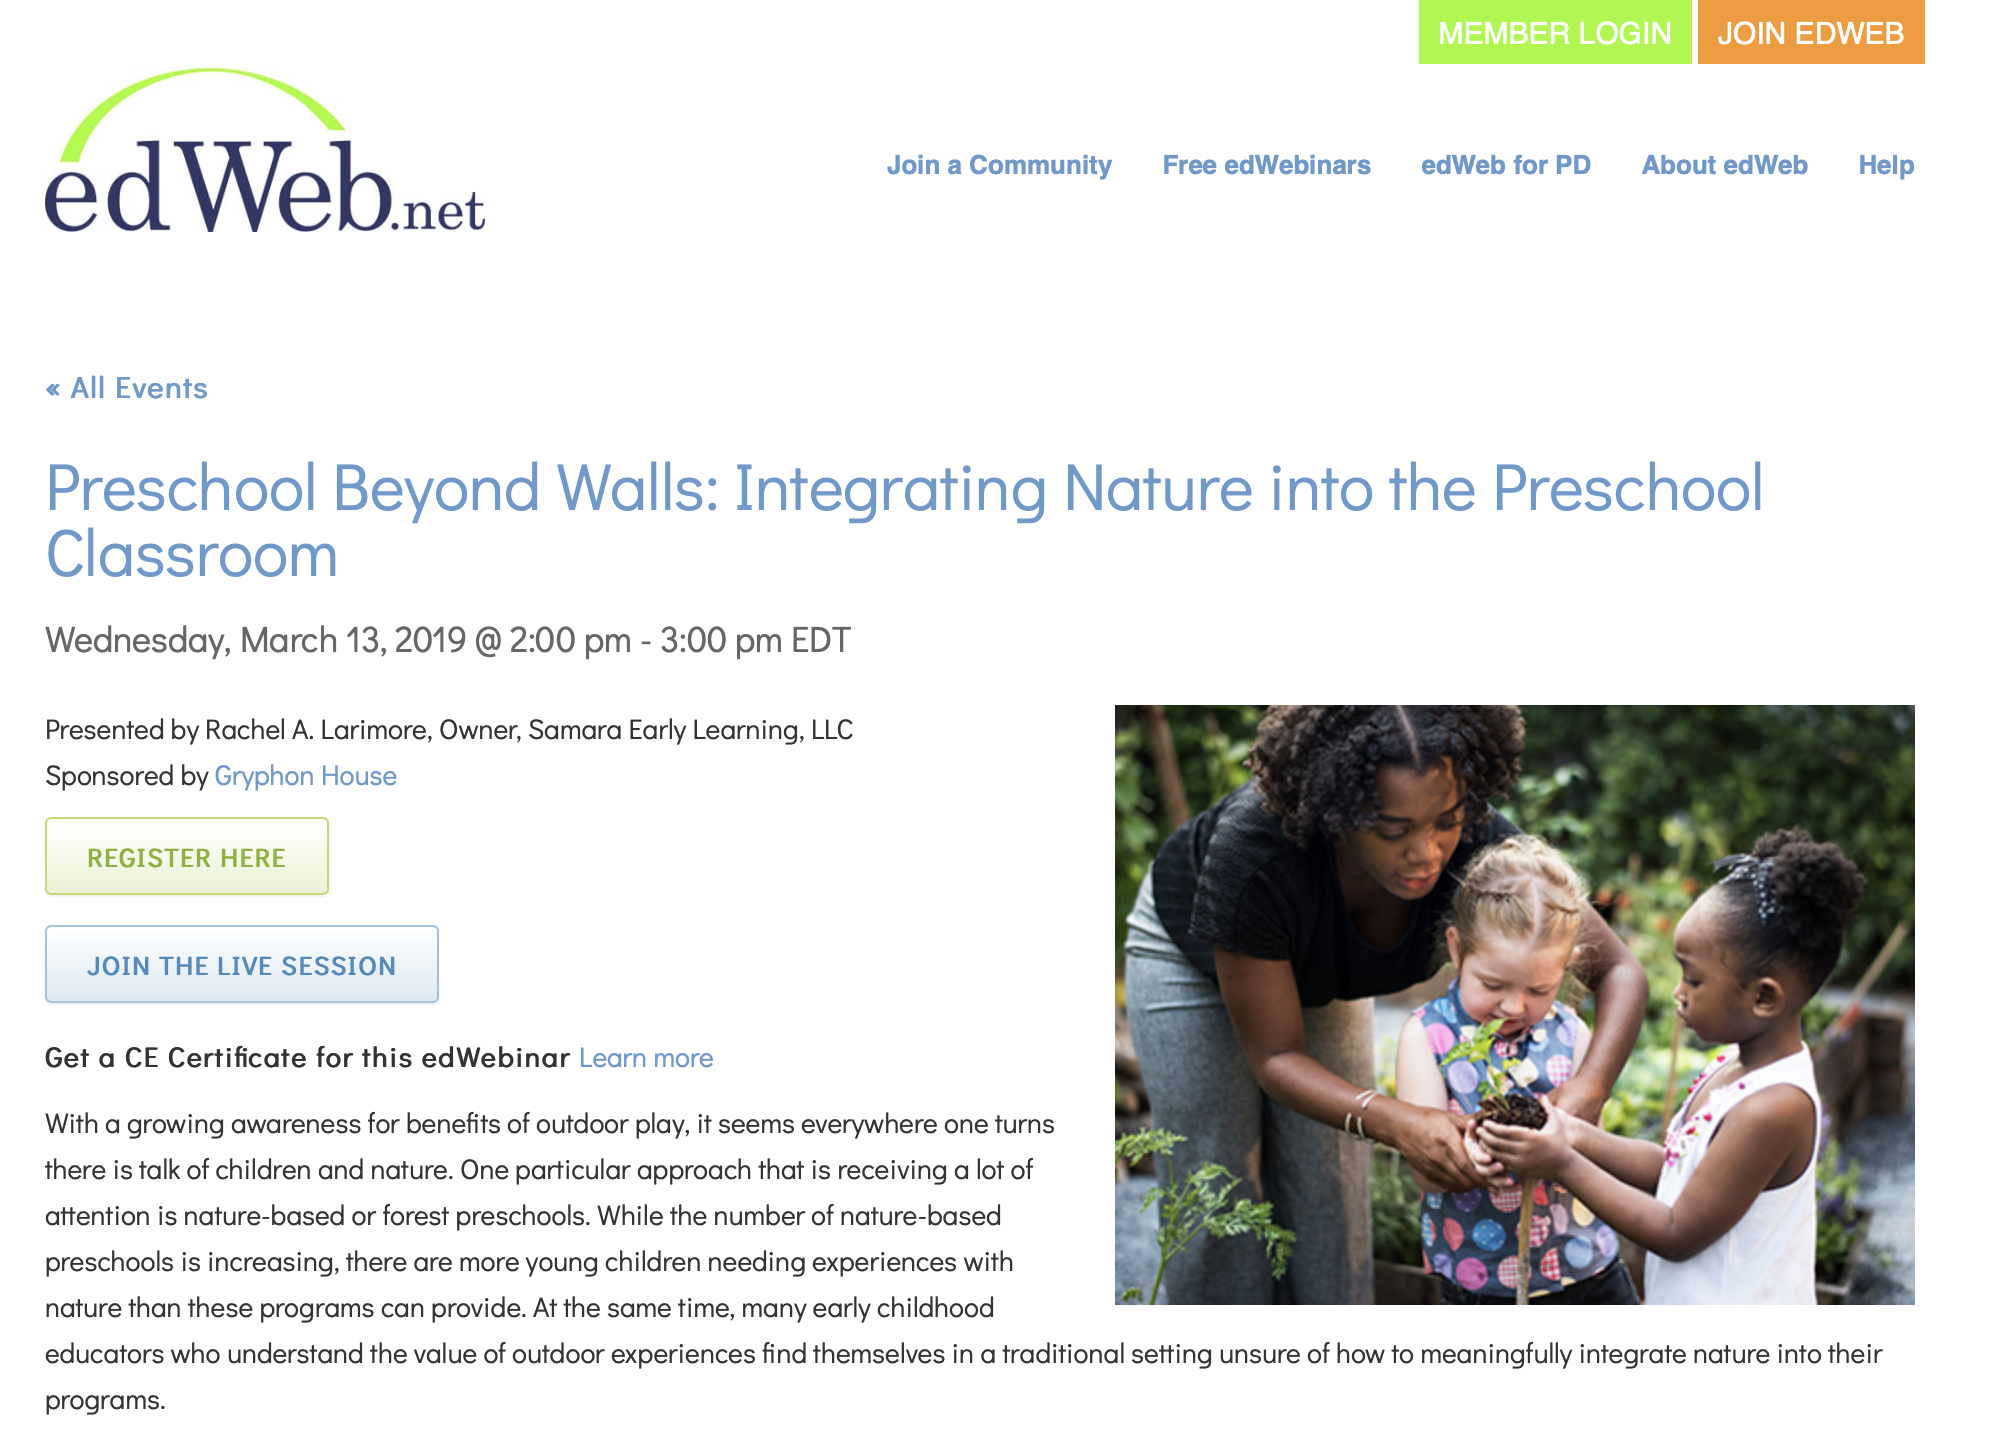 Preschool Beyond Walls: Integrating Nature into the Preschool Classroom (Webinar)